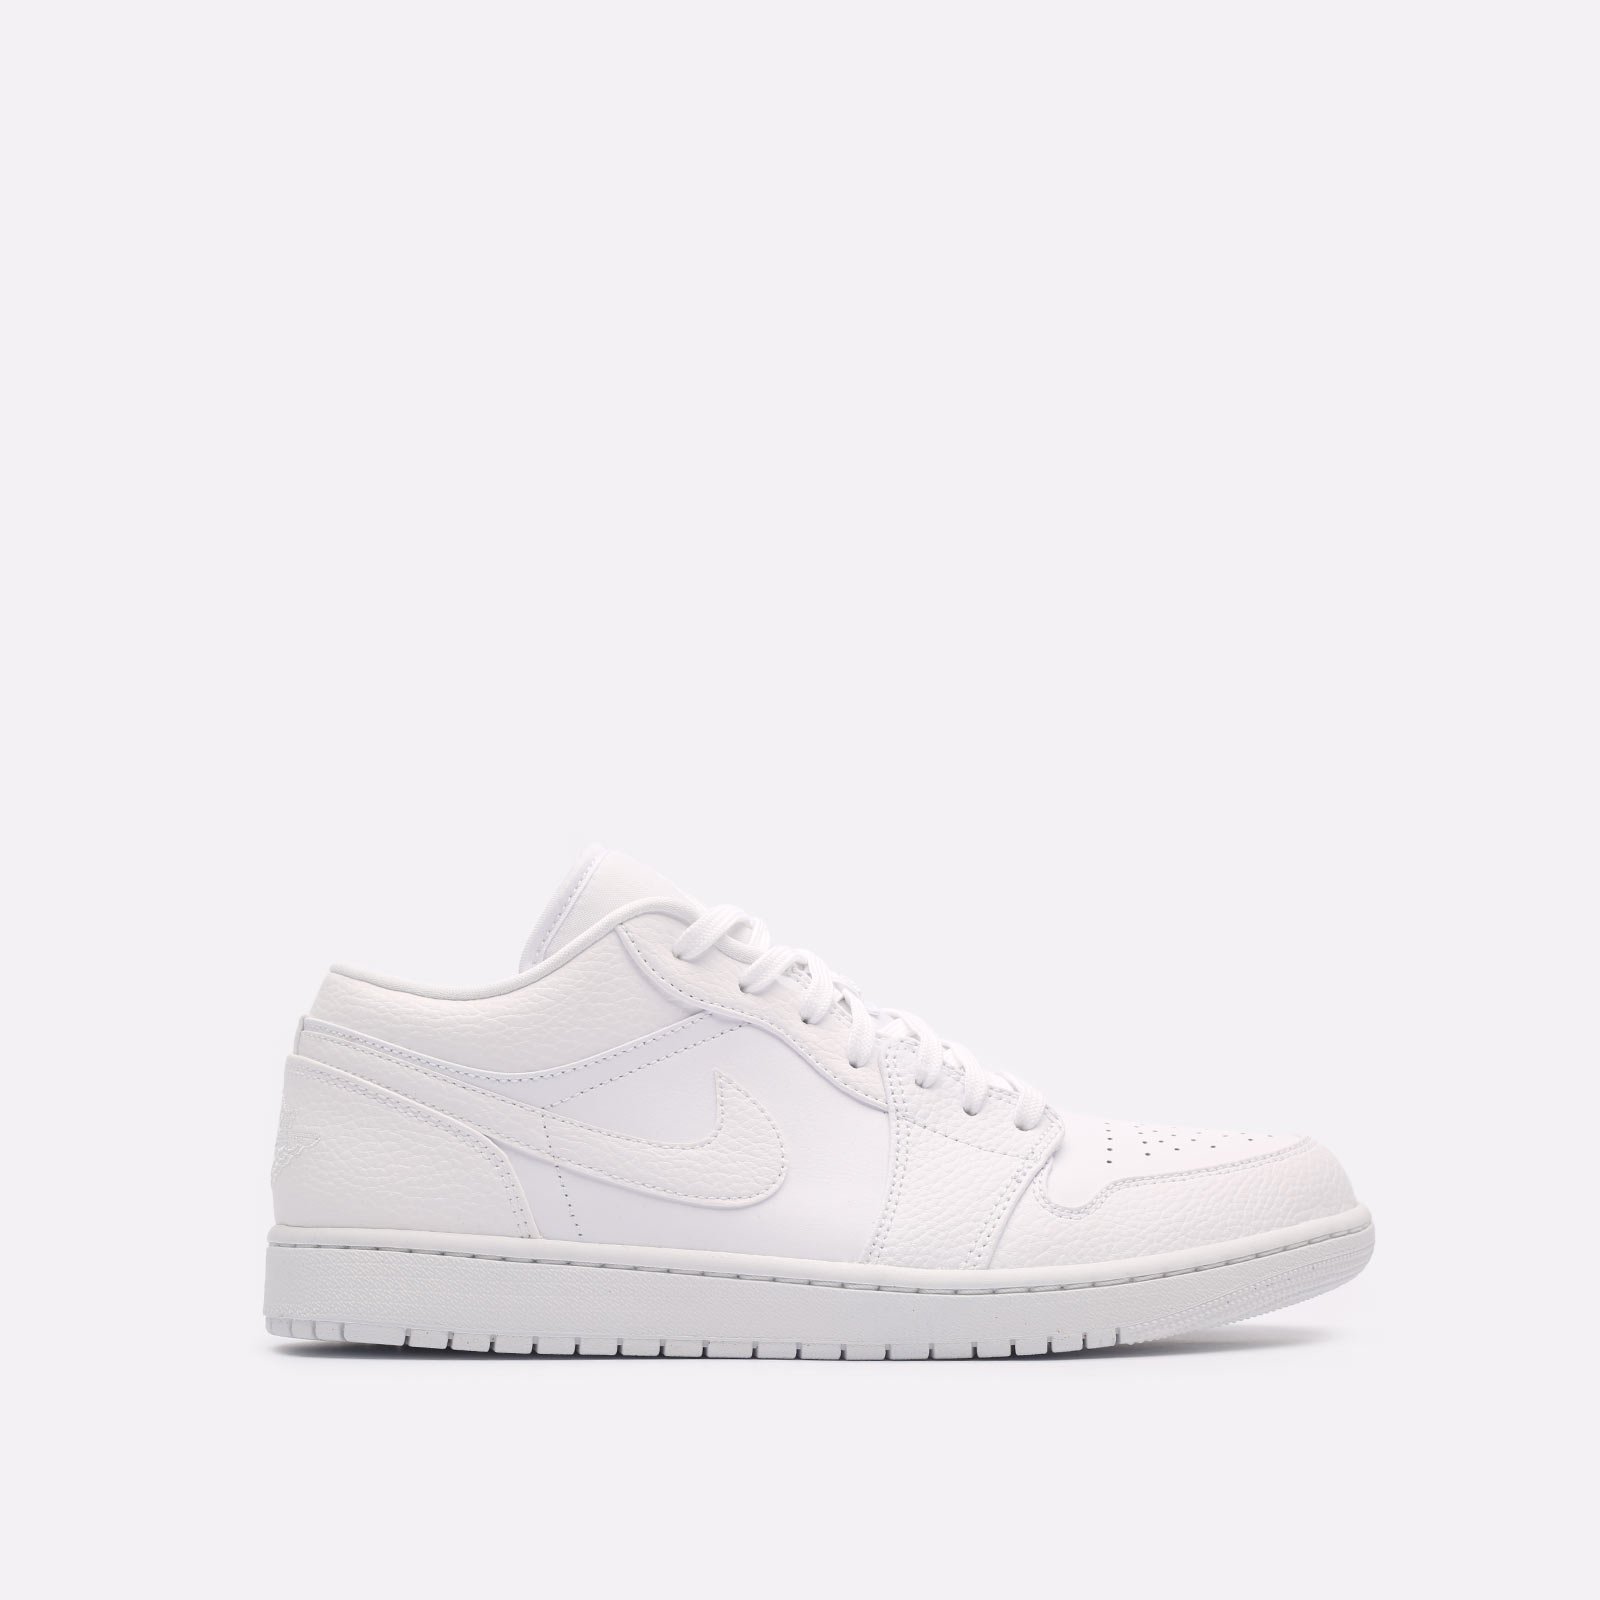 мужские белые кроссовки Jordan 1 Low 553558-130 - цена, описание, фото 1